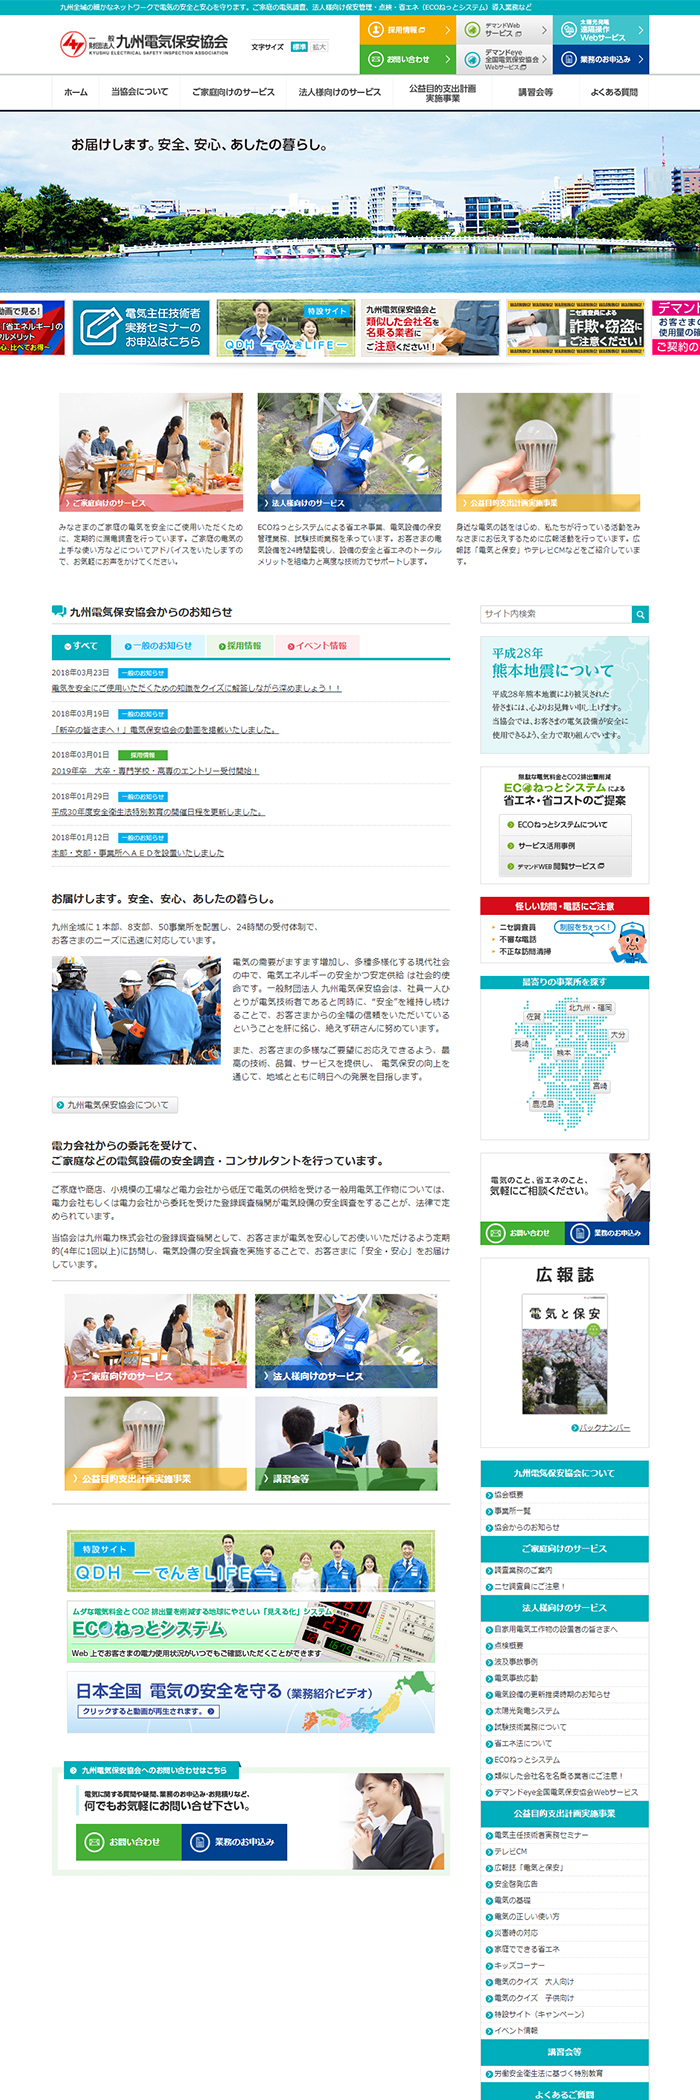 九州電気保安協会様ホームページ制作実績 デスクトップイメージ